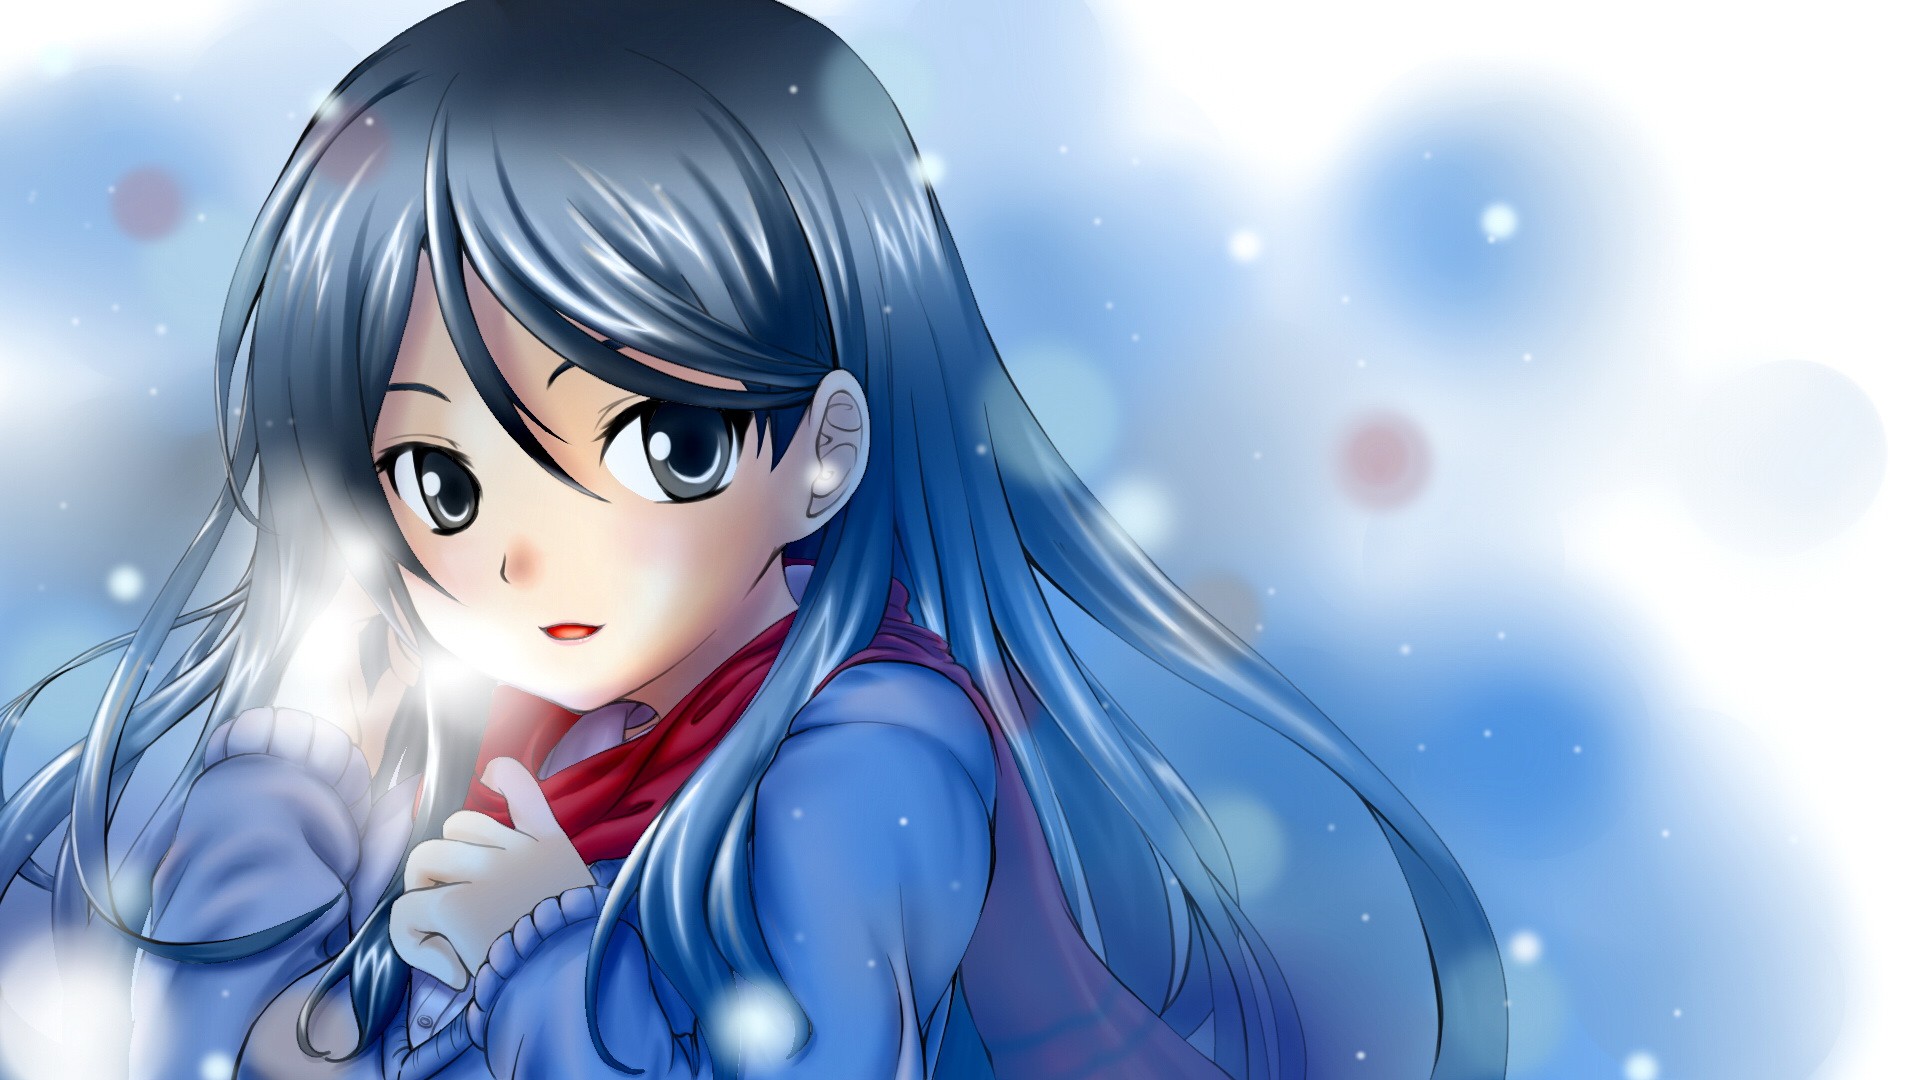 Mùa đông là thời điểm của những băng tuyết rực rỡ và cảm giác ấm áp của mùa lễ hội. Những hình ảnh anime về mùa đông sẽ là điều mà bạn không thể bỏ qua. Chúng sẽ đem đến cho bạn cảm giác ấm áp, rực rỡ và đầy ma mị. Hãy xem ngay những hình ảnh anime mùa đông này để thưởng thức sự tuyệt vời của nó.